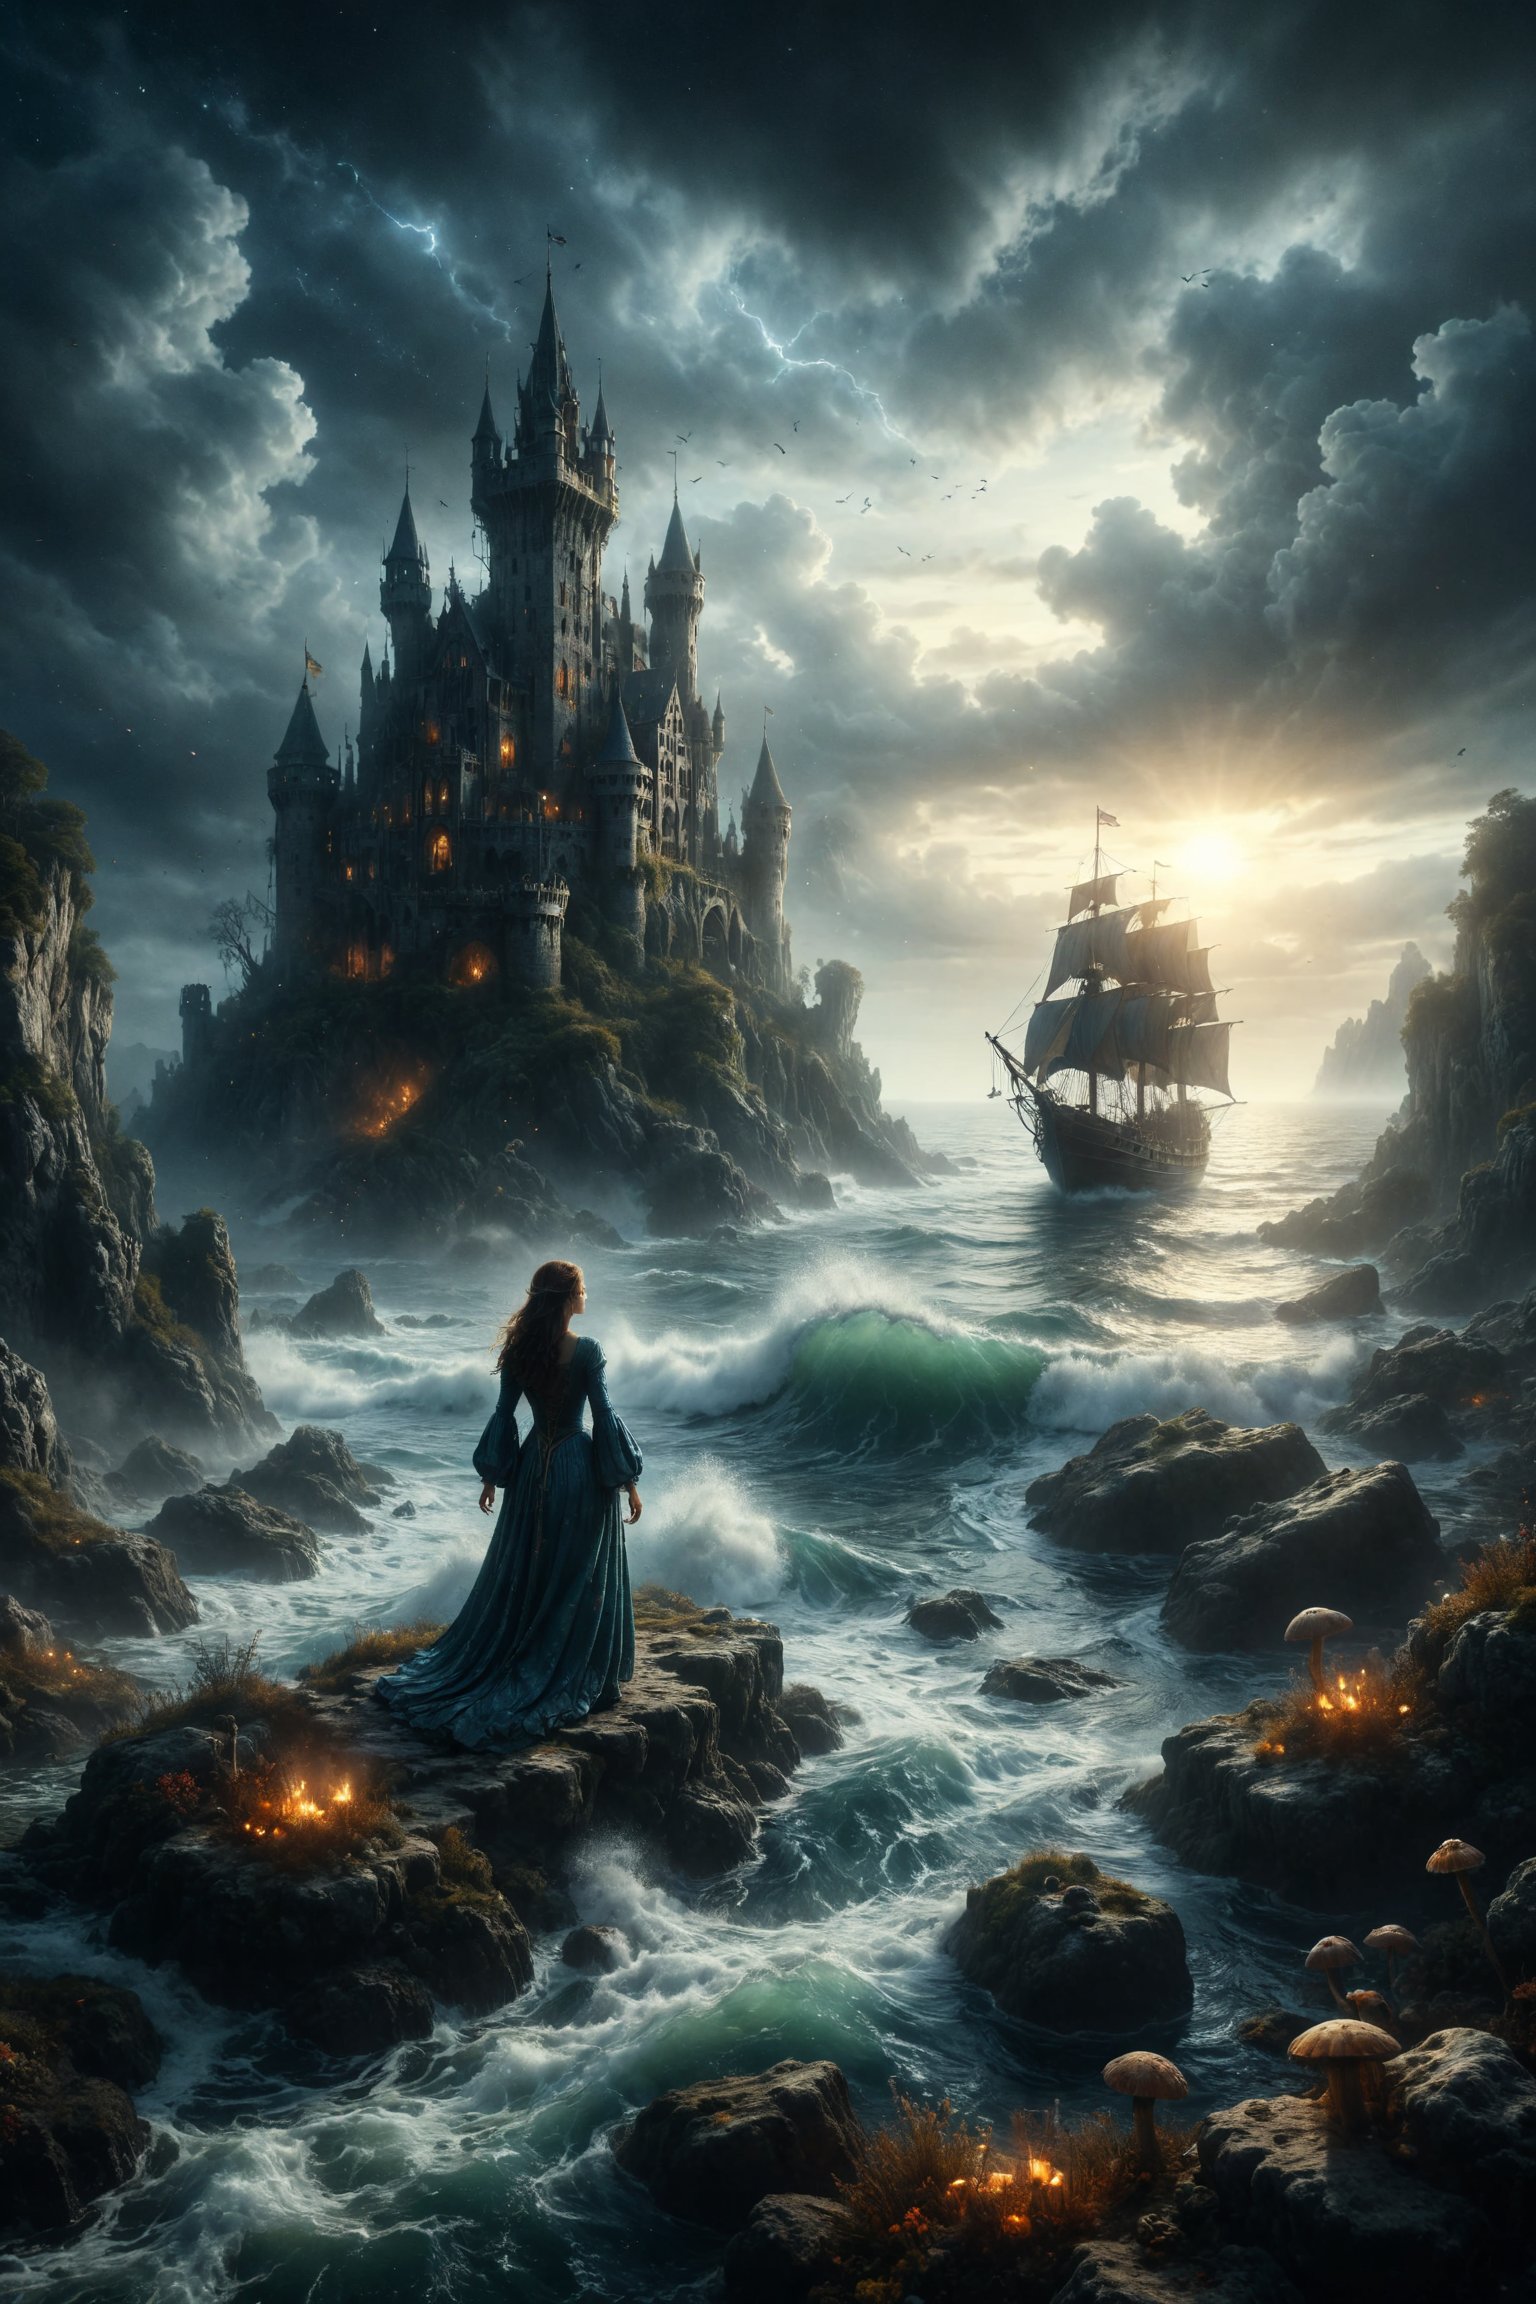 mitica y misteriosa esena de fantasia medival en el fondo del mar